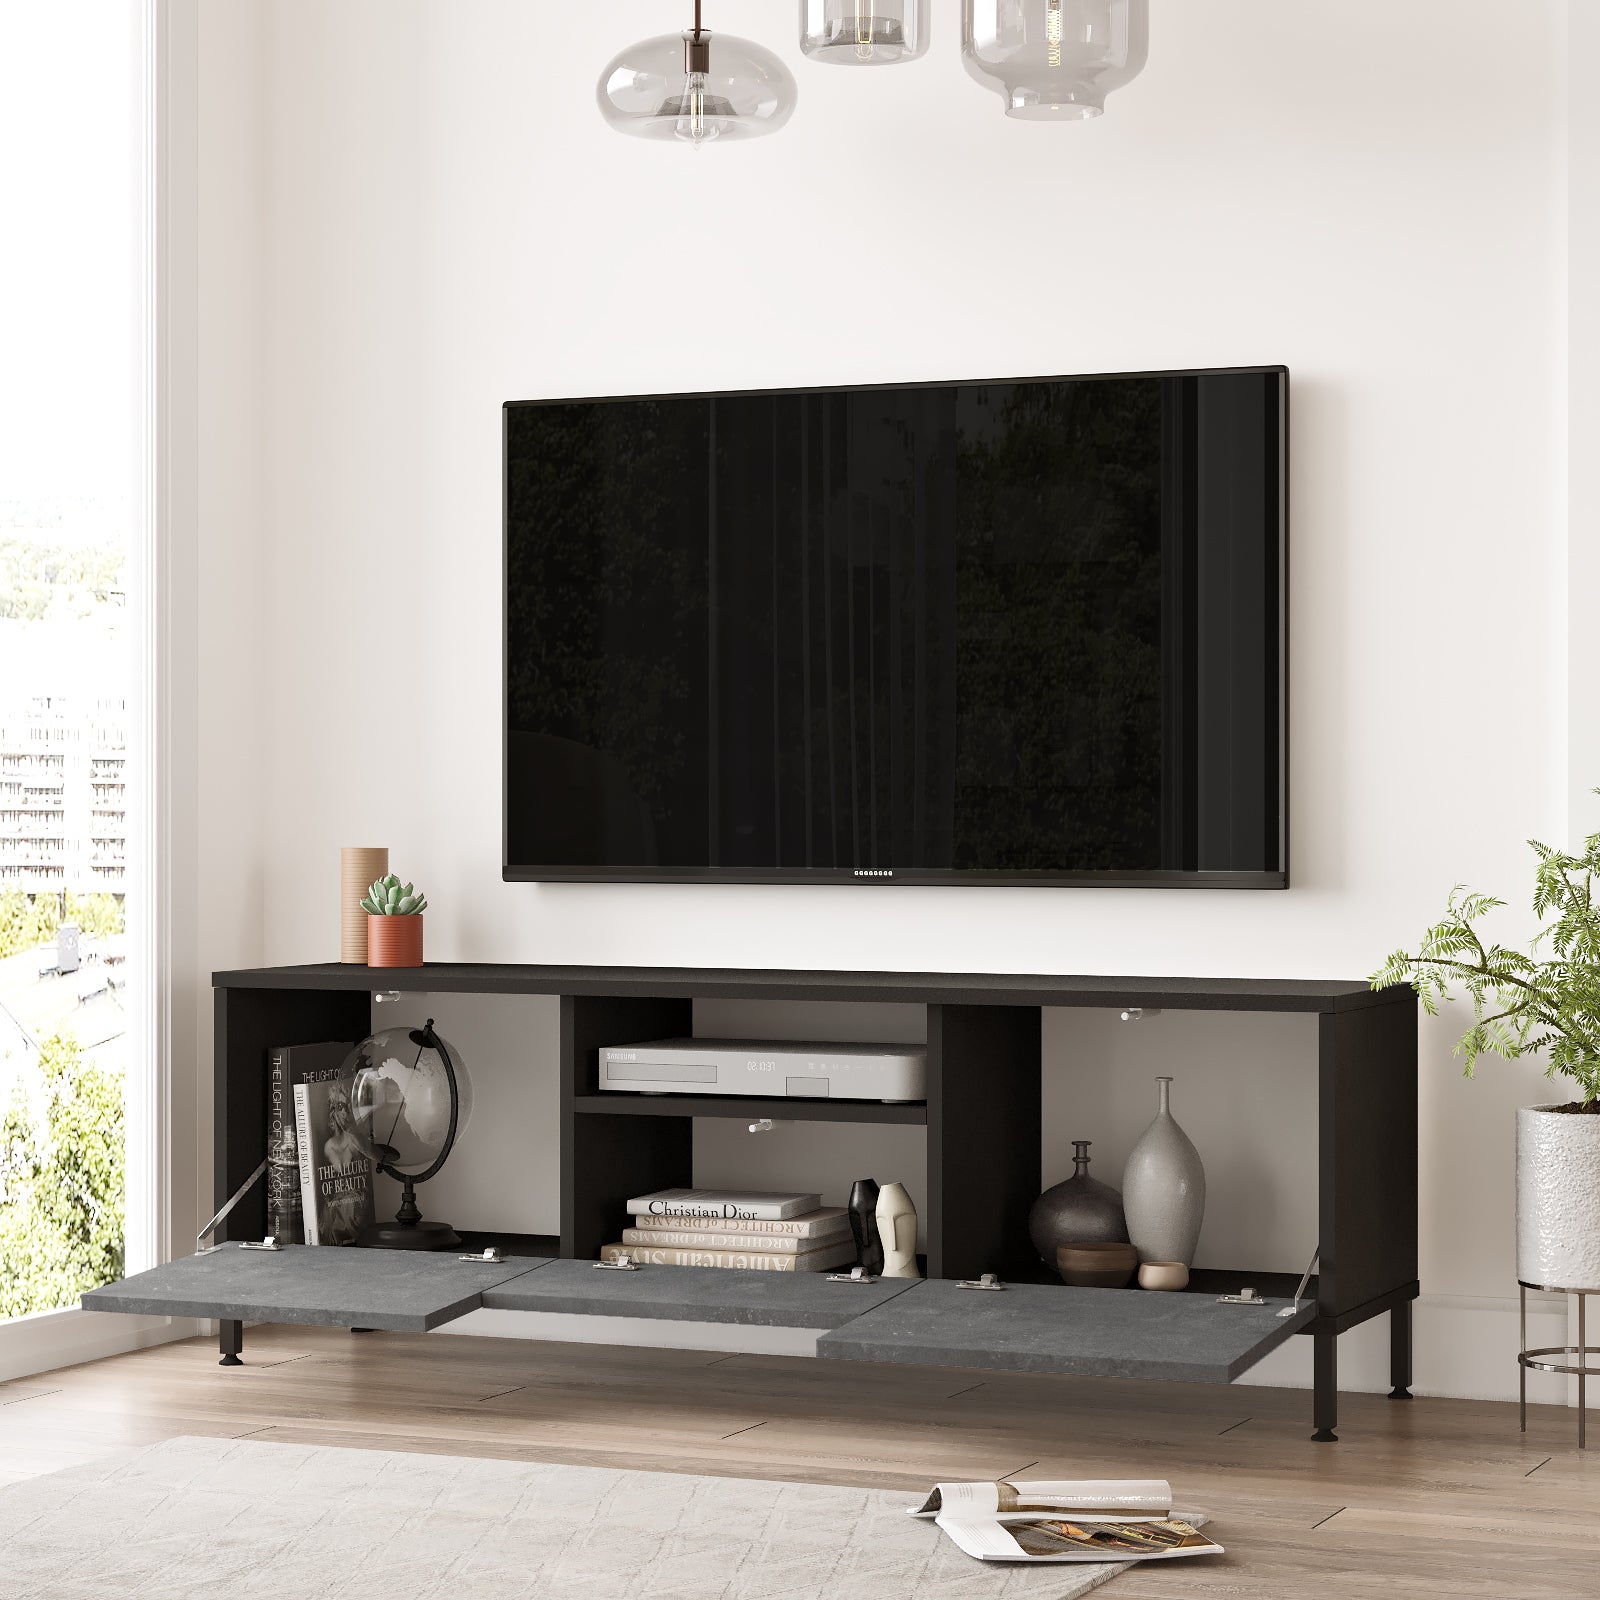 noir-gris-Meuble TV FOCUS avec rangements spacieux-idéal pour intégrer vos appareils multimédias avec style.